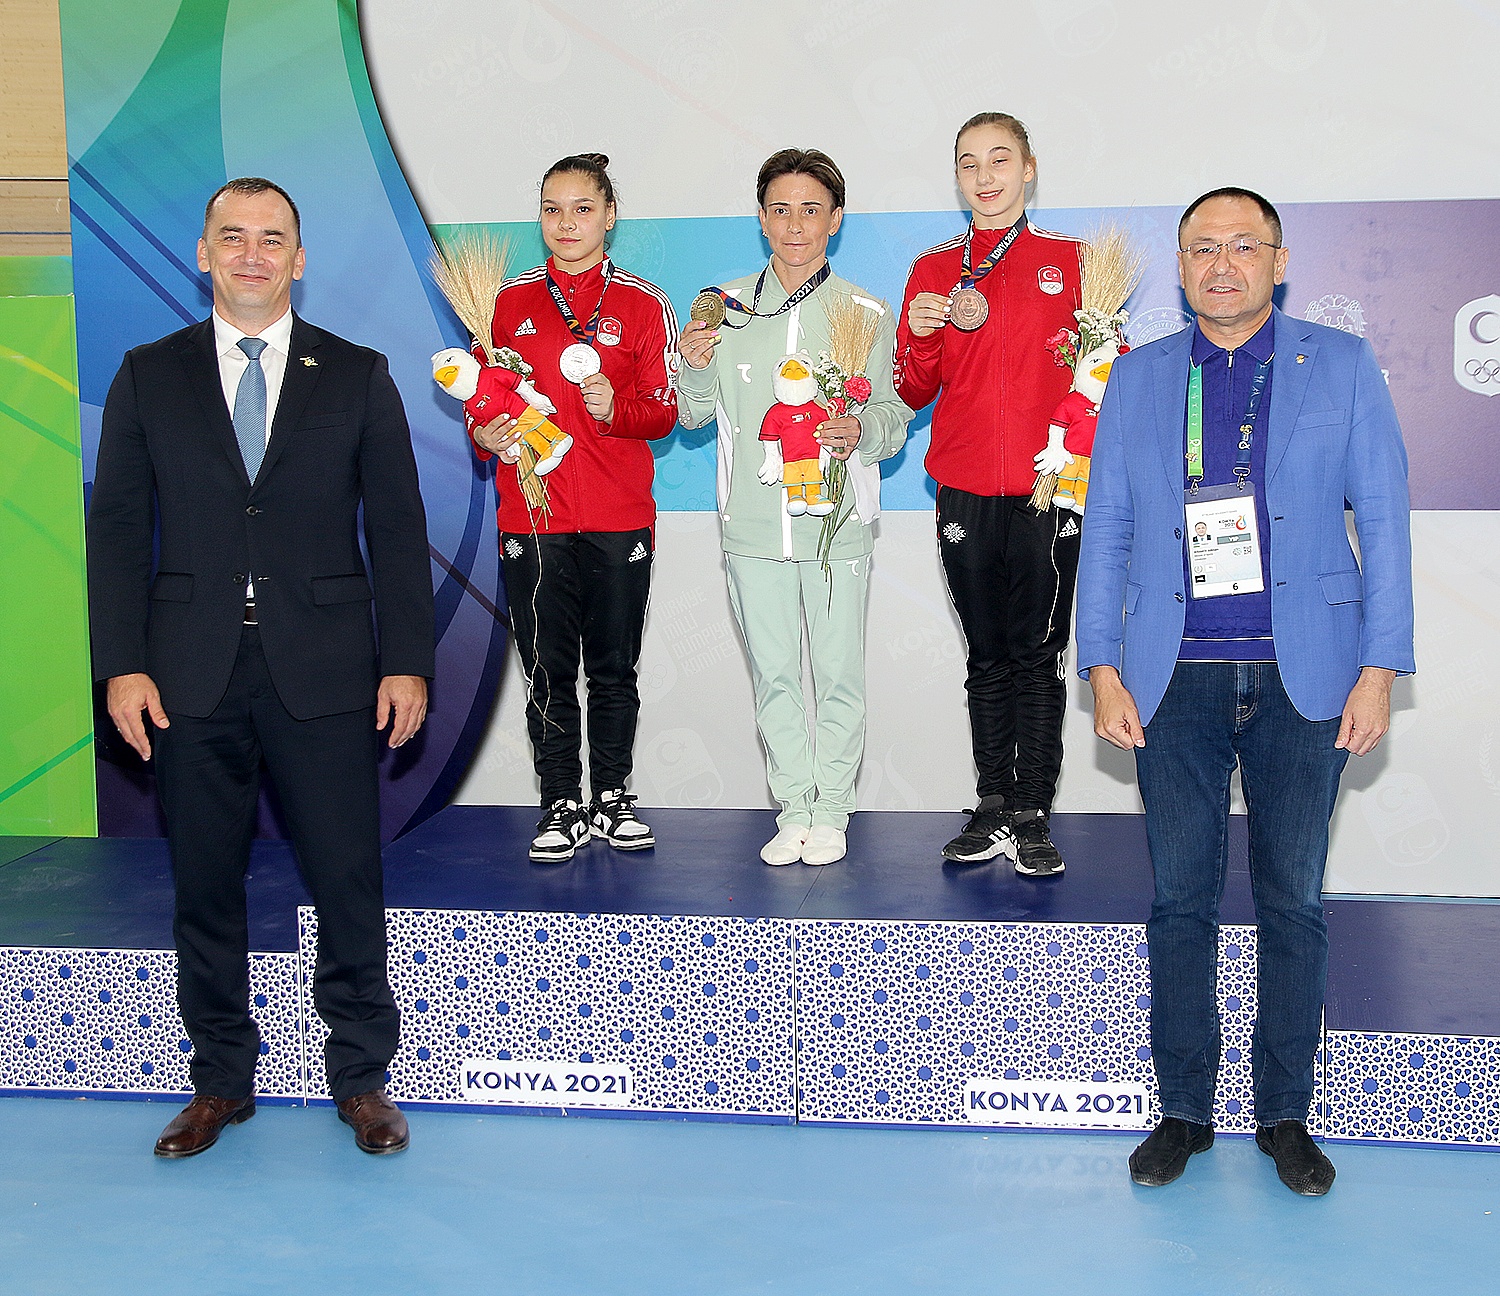 Чусовитина на церемонии вручения медалей Игр исламской солидарности 2021 года в Конье по спортивной гимнастике среди женщин в прыжках в длину